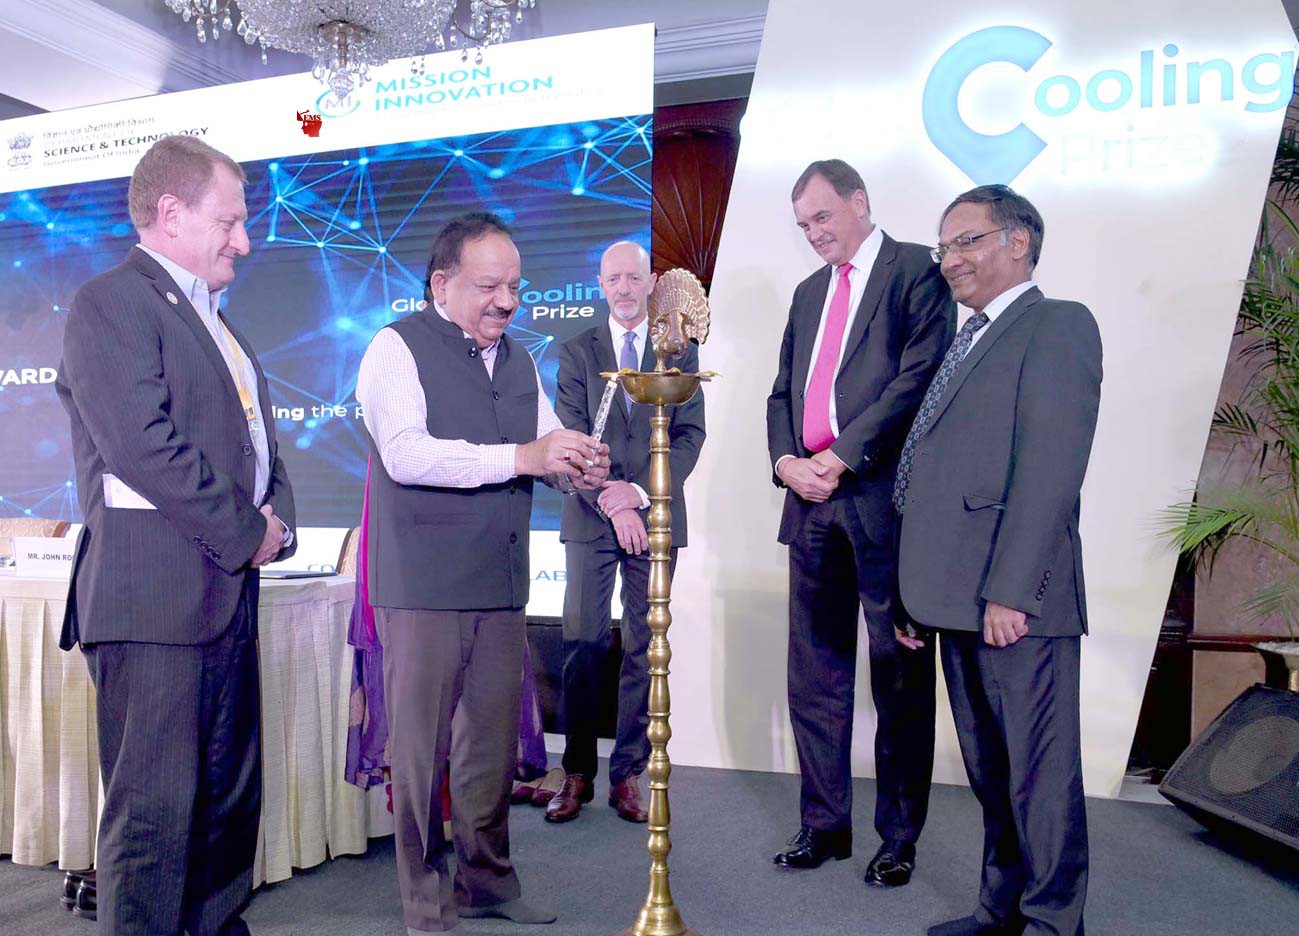 केंद्रीय स्वास्थ्य और परिवार कल्याण मंत्री डॉ हर्षवर्धन शुक्रवार को नई दिल्ली में "ग्लोबल कूलिंग प्राइज़" के फाइनलिस्ट के एक पुरस्कार समारोह में दीप प्रज्ज्वलित करते हुए।